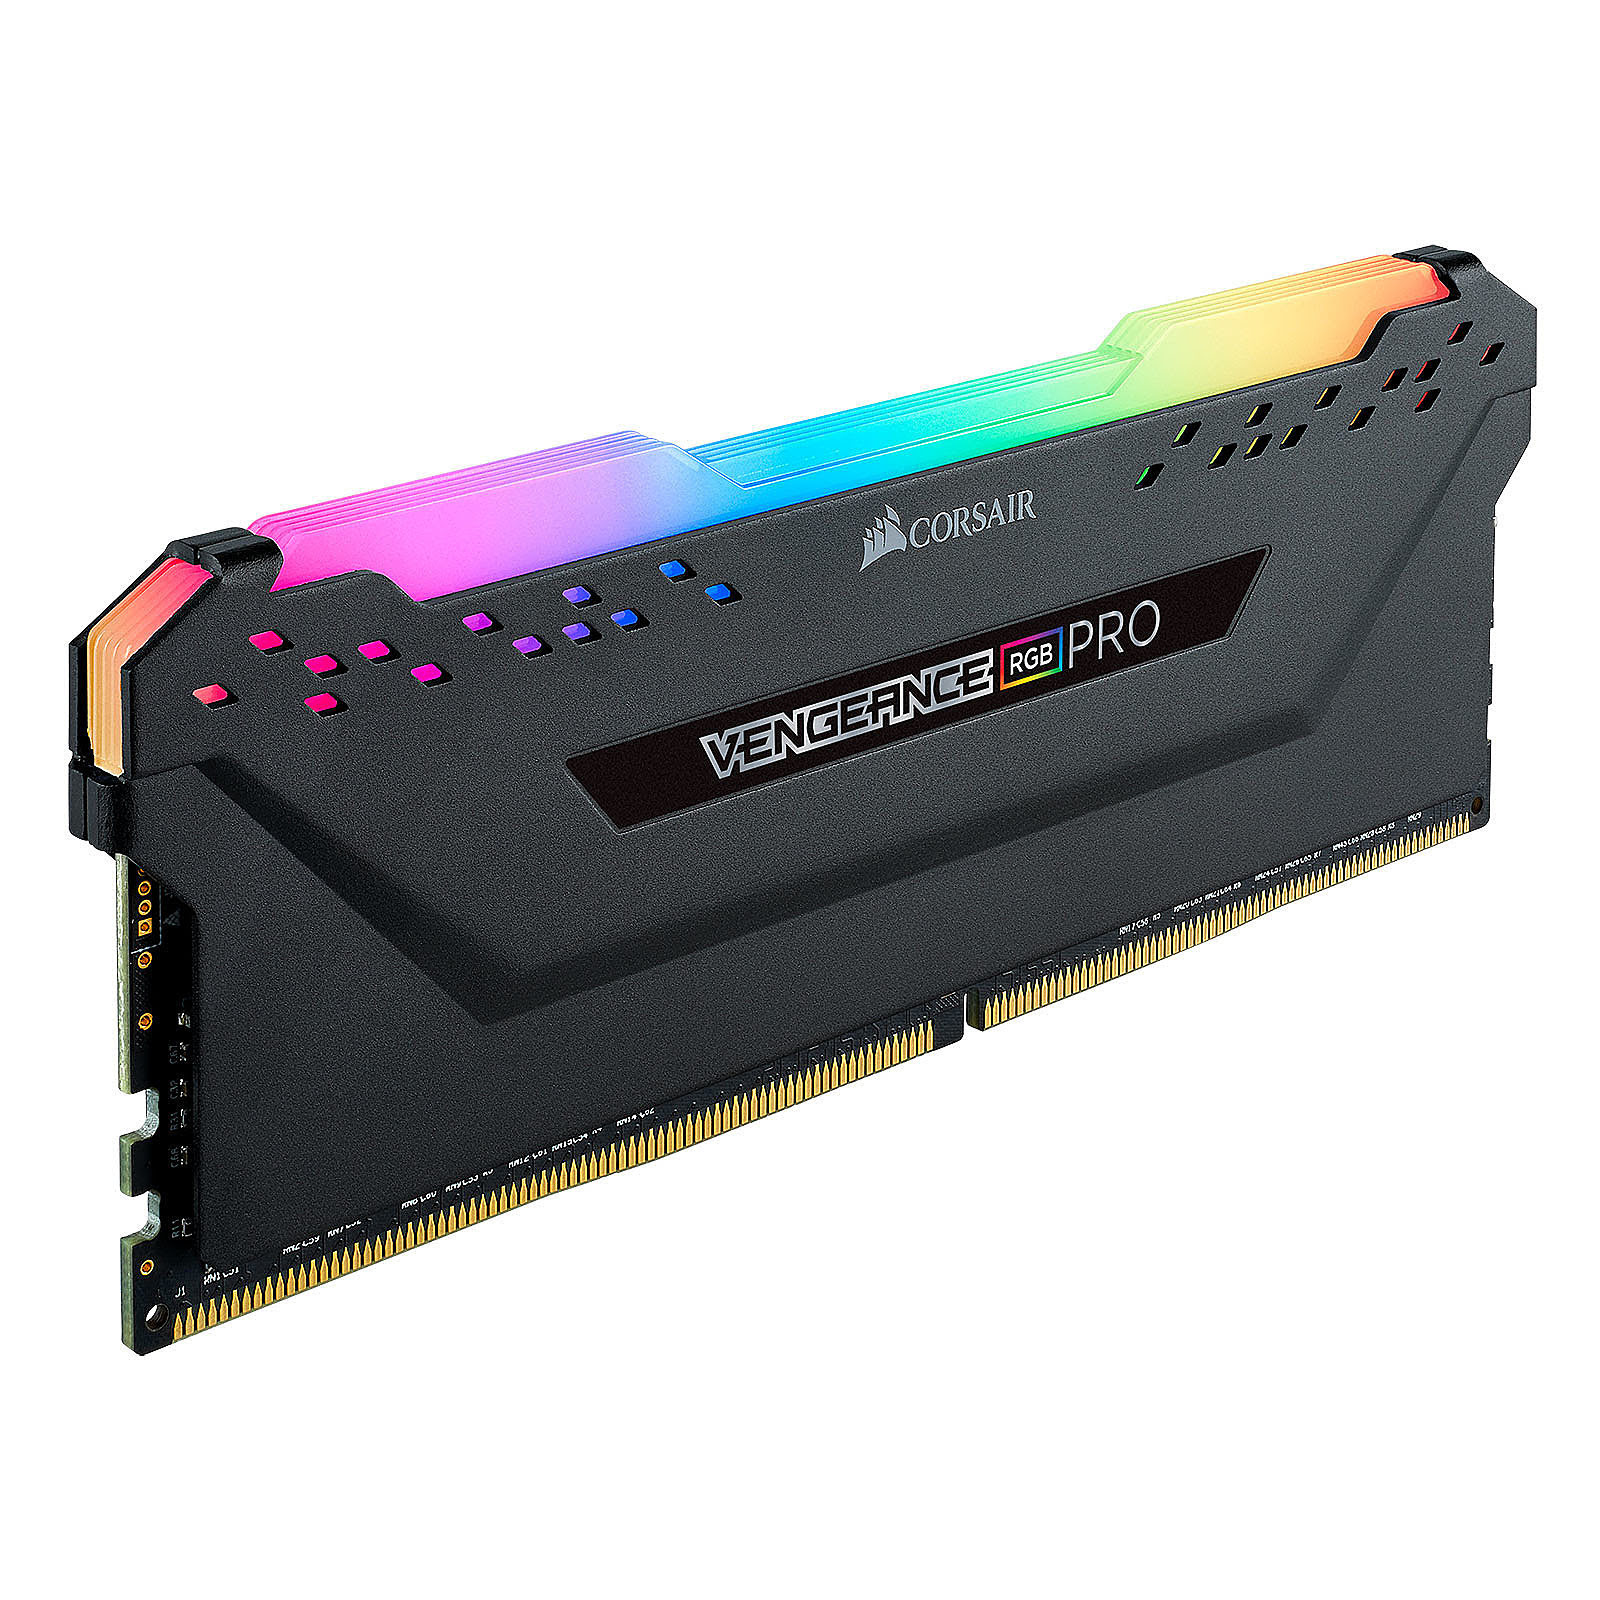 Corsair Vengeance RGB Pro 32Go (2x16Go) DDR4 3600MHz - Mémoire PC Corsair  sur